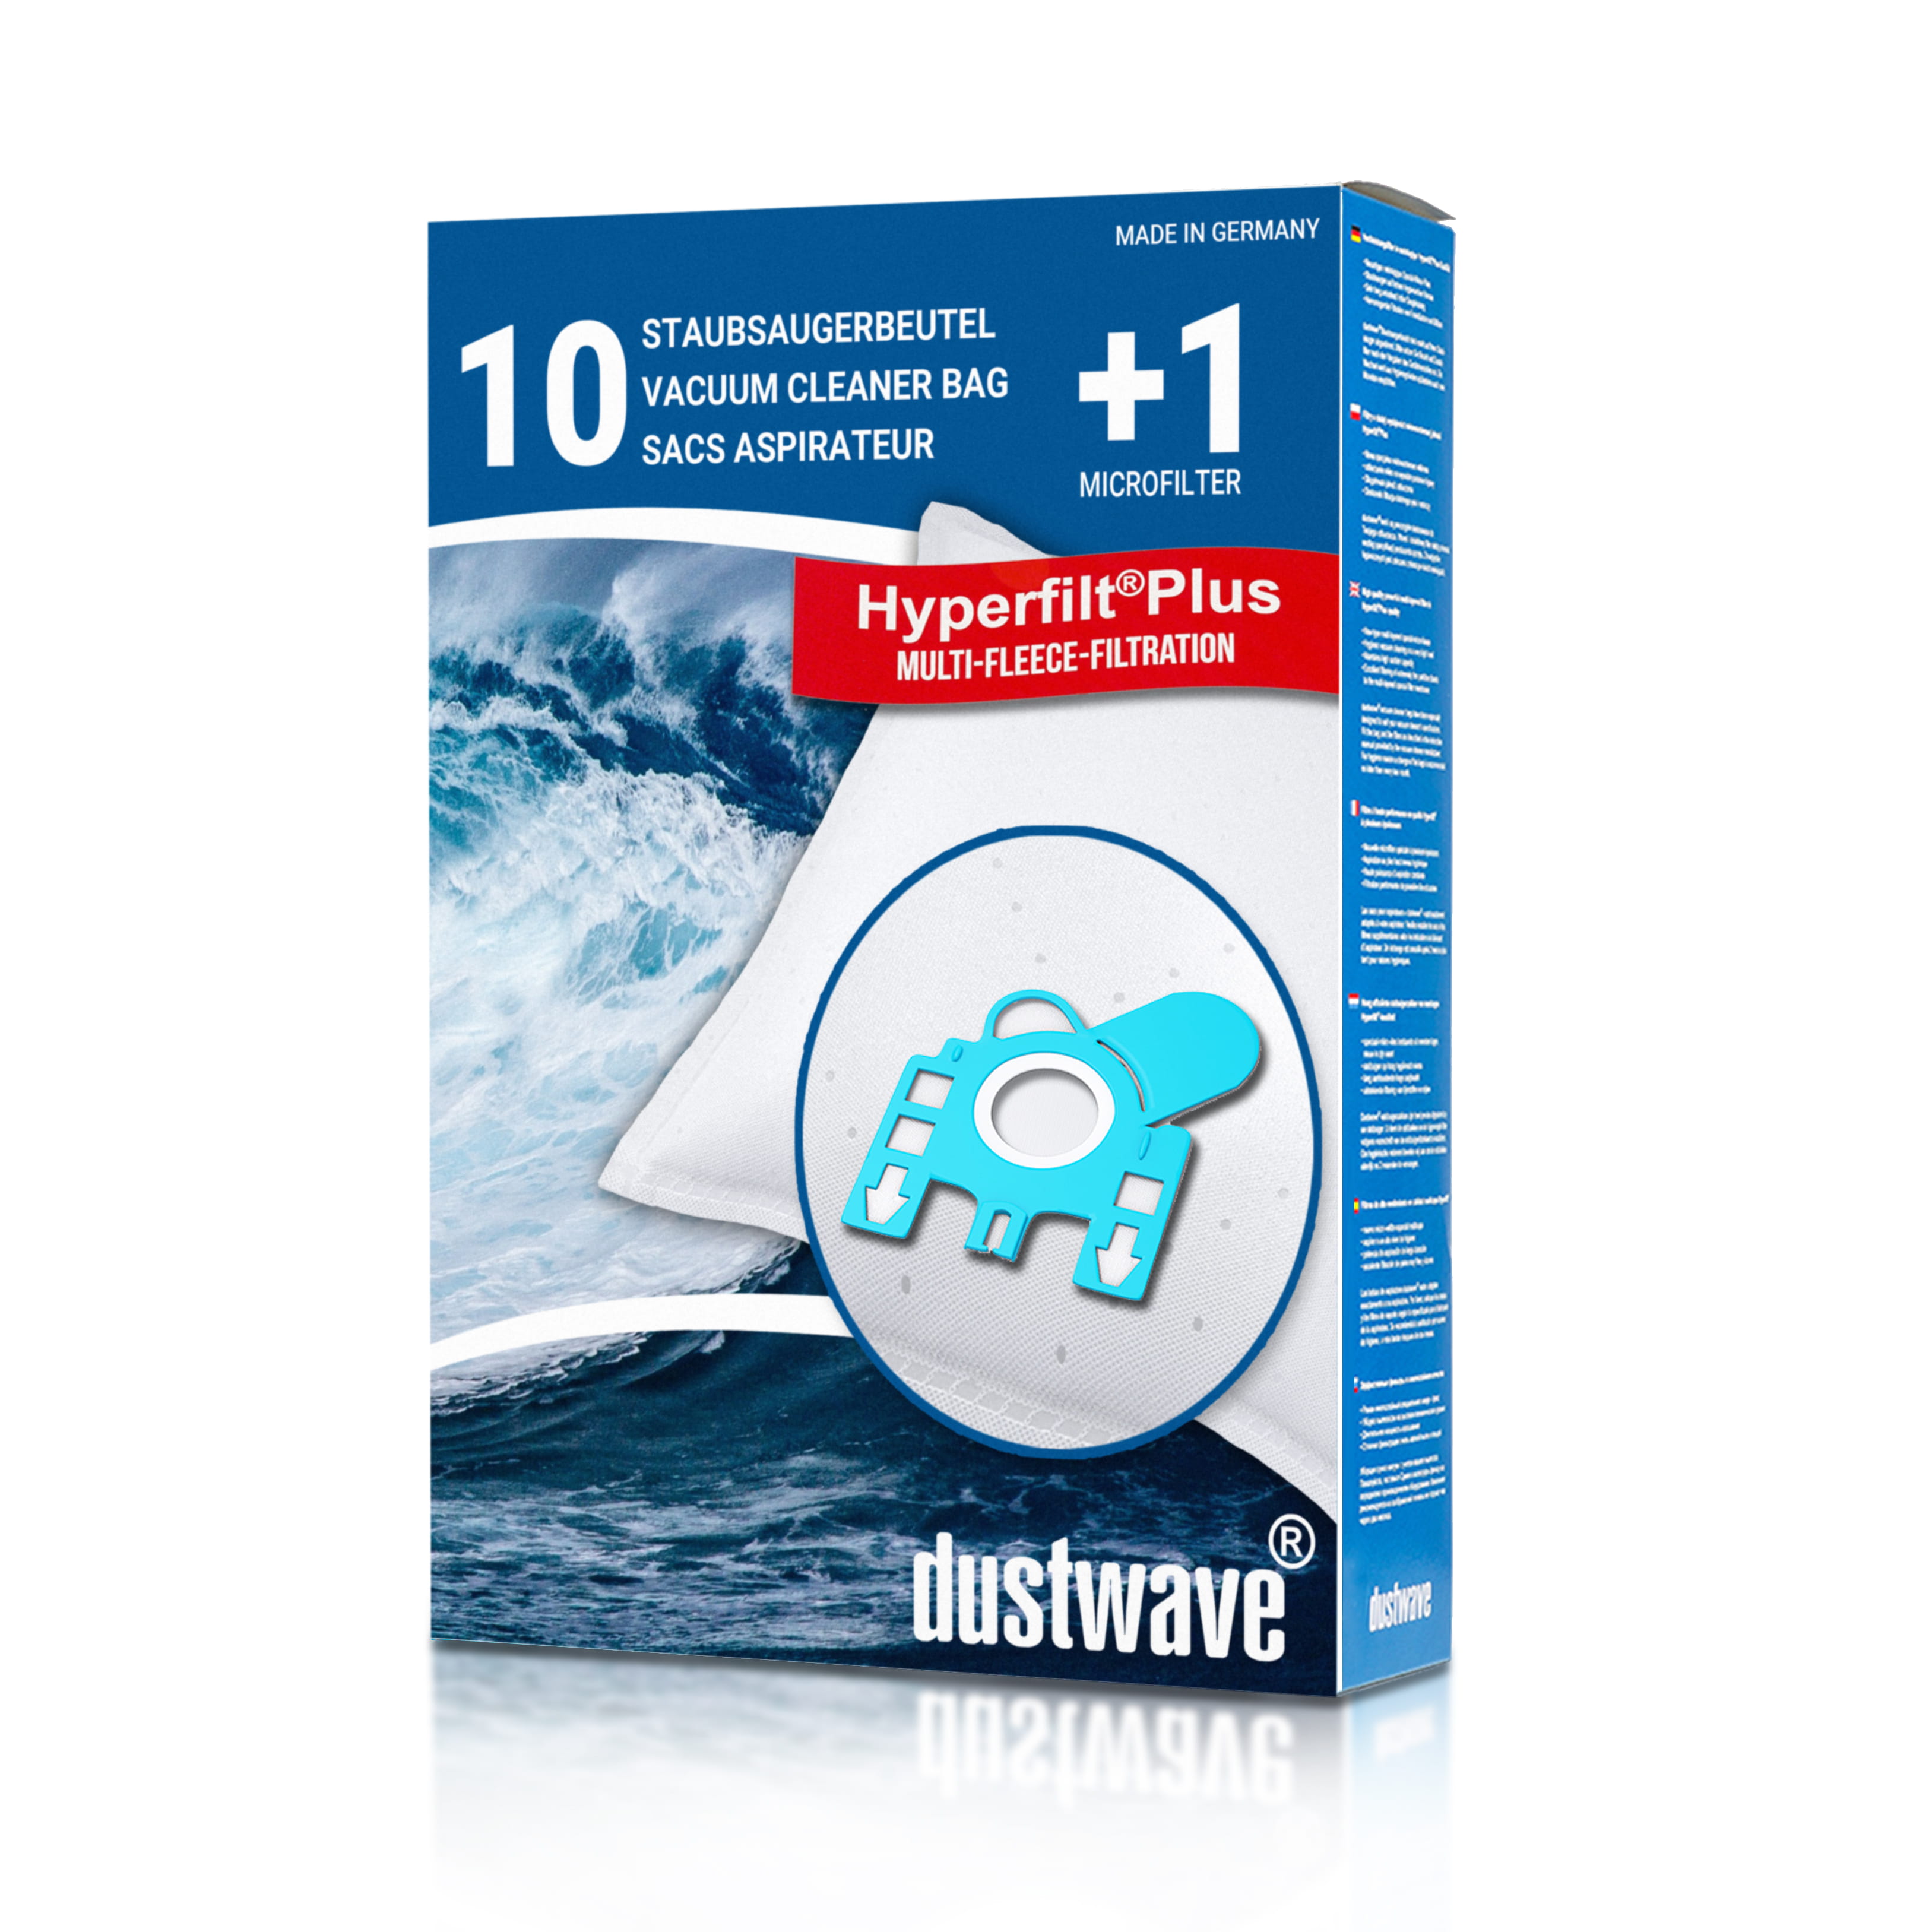 Dustwave® 10 Staubsaugerbeutel für Hoover S3708F01 / TRS3708F01 - hocheffizient, mehrlagiges Mikrovlies mit Hygieneverschluss - Made in Germany